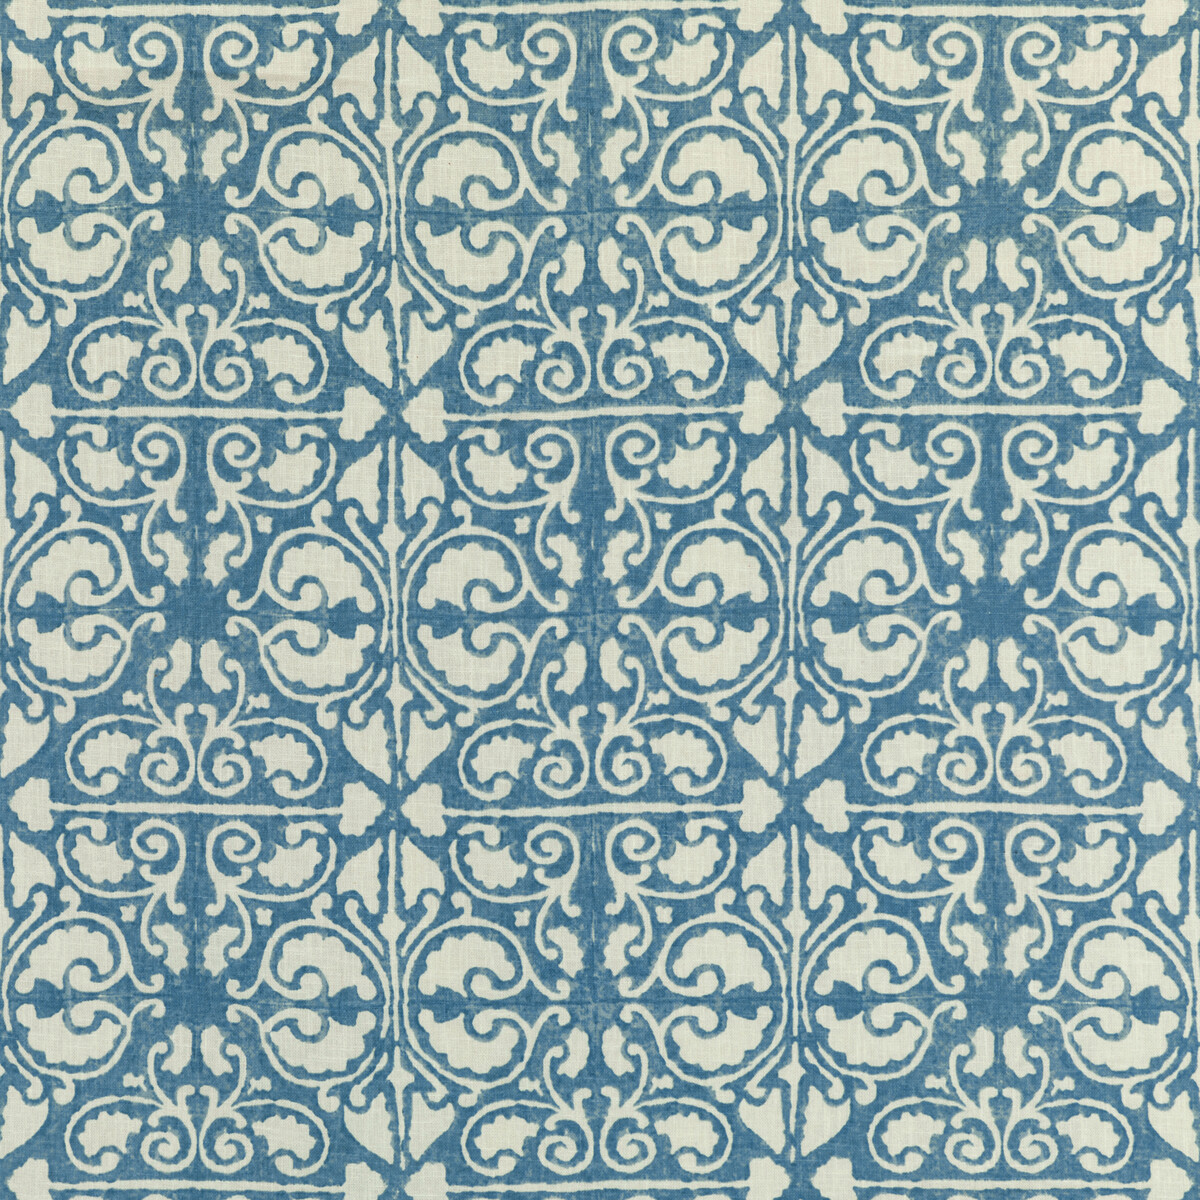 Kravet Basics Agra Tile.5.0 Kravet Basics Multipurpose Fabric in Agra Tile-5/Blue/White/Light Blue